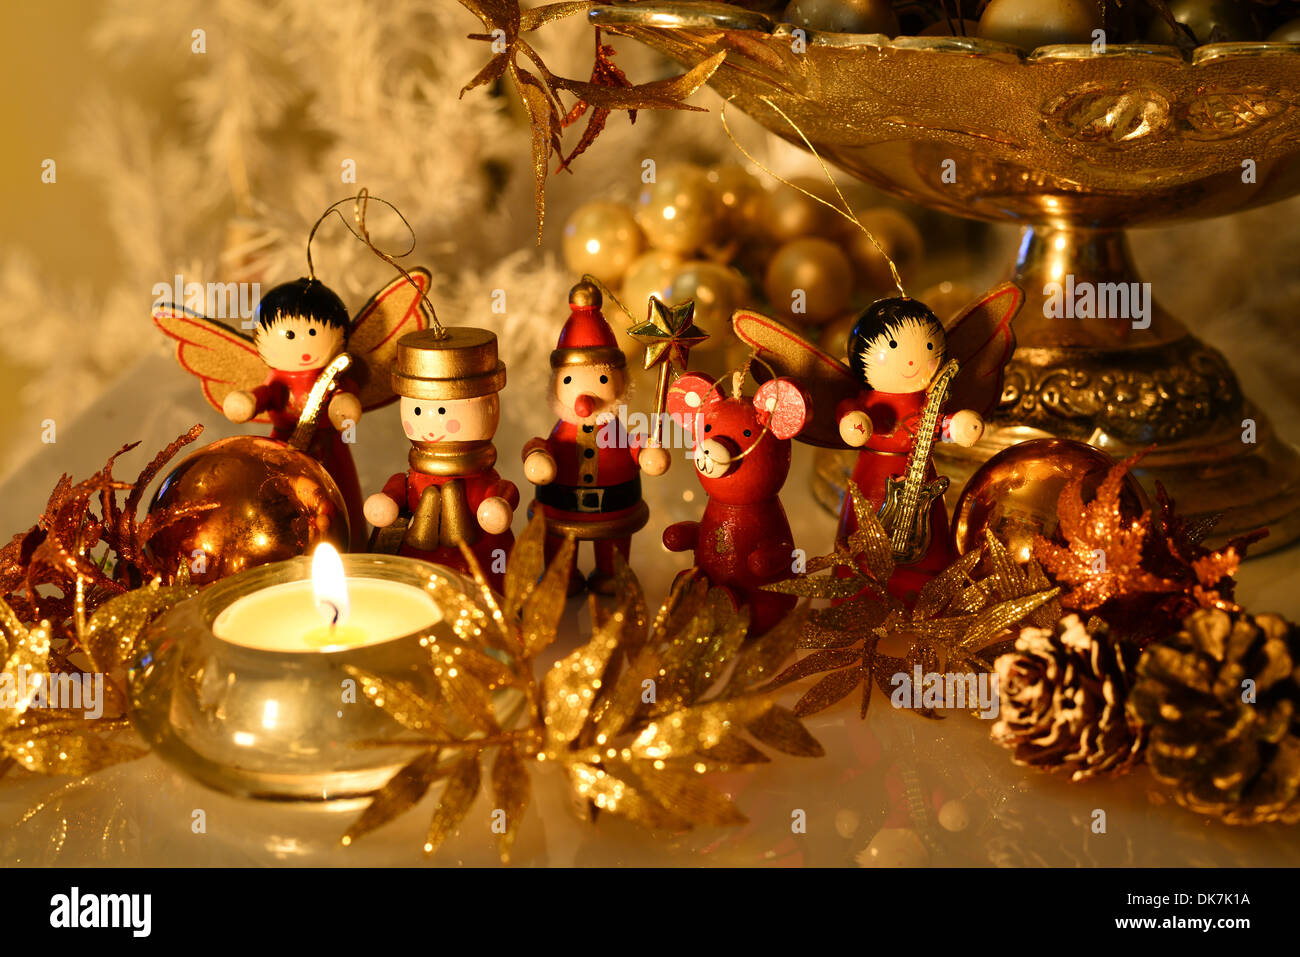 Décoration de Noël avec des figures en bois Banque D'Images